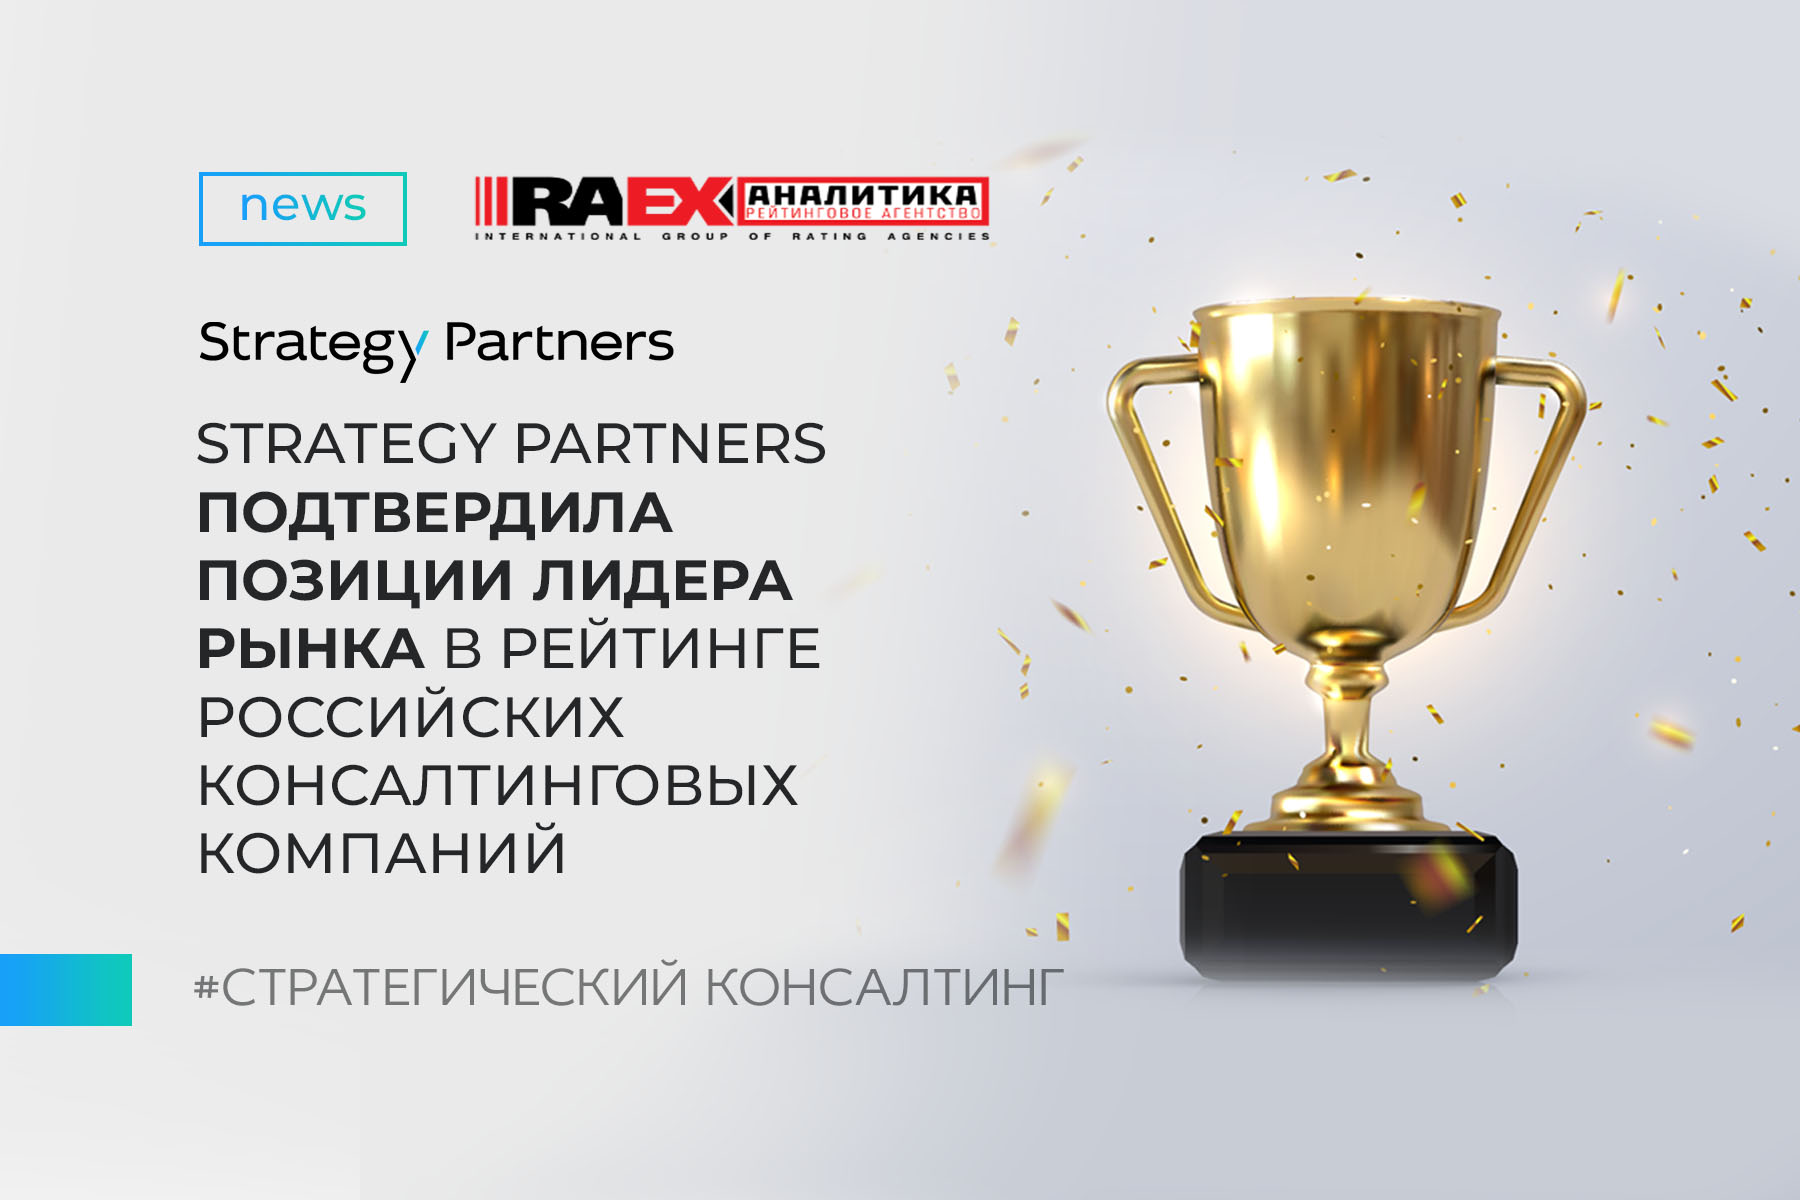 Strategy Partners подтвердила позиции лидера рынка в рейтинге российских консалтинговых компаний по версии RAEX